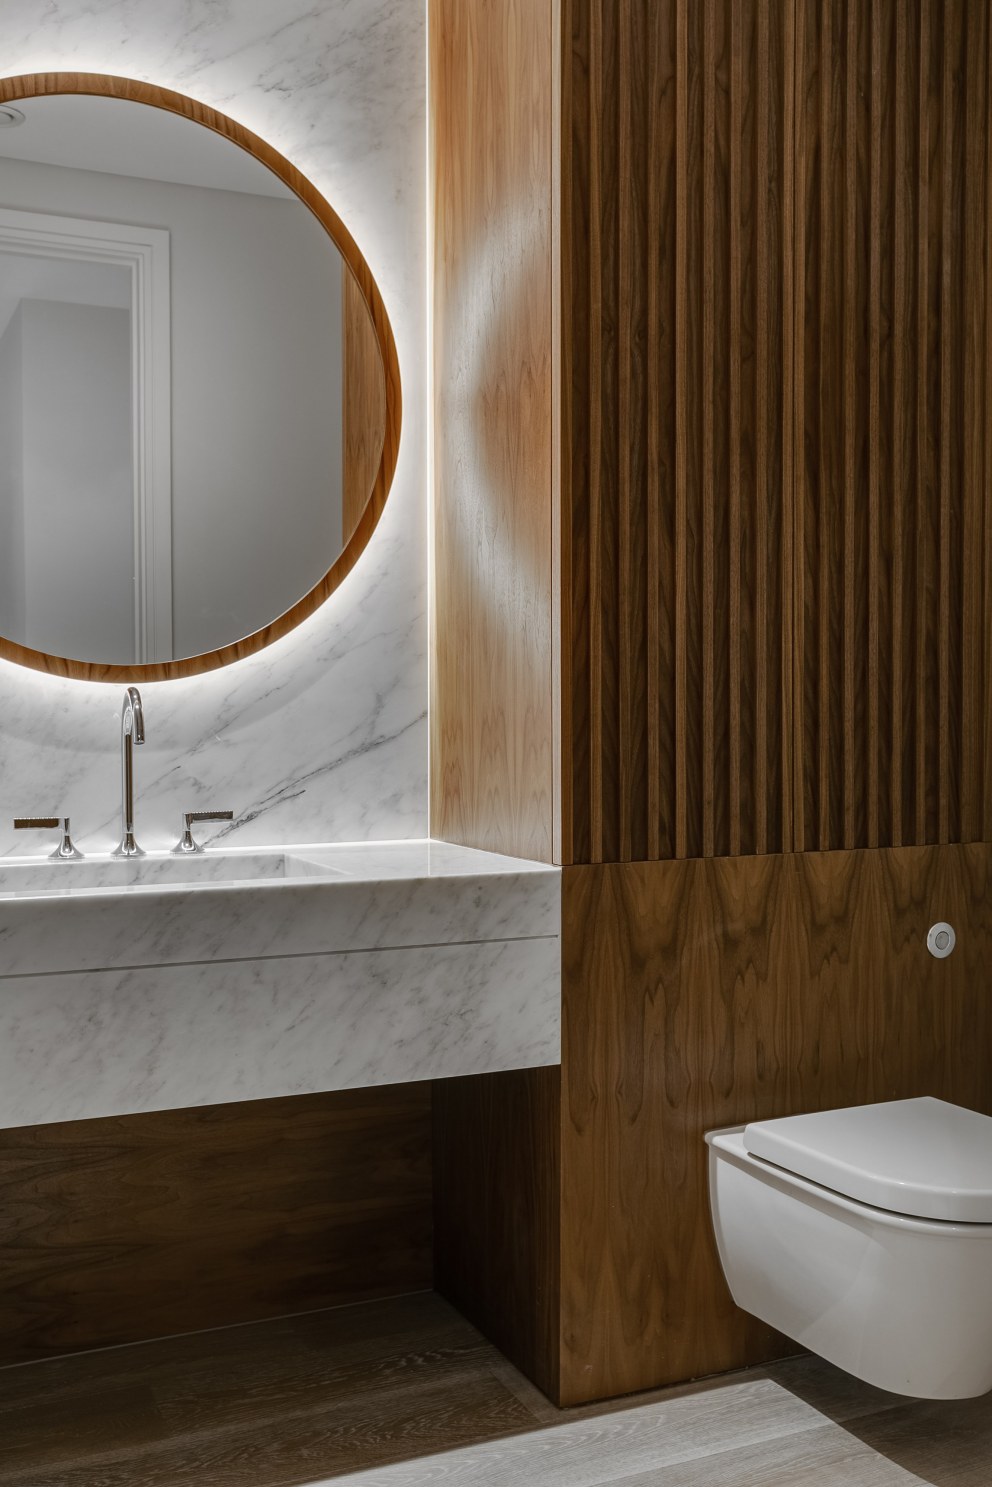 Kensington Townhouse | Guest WC | Interior Designers